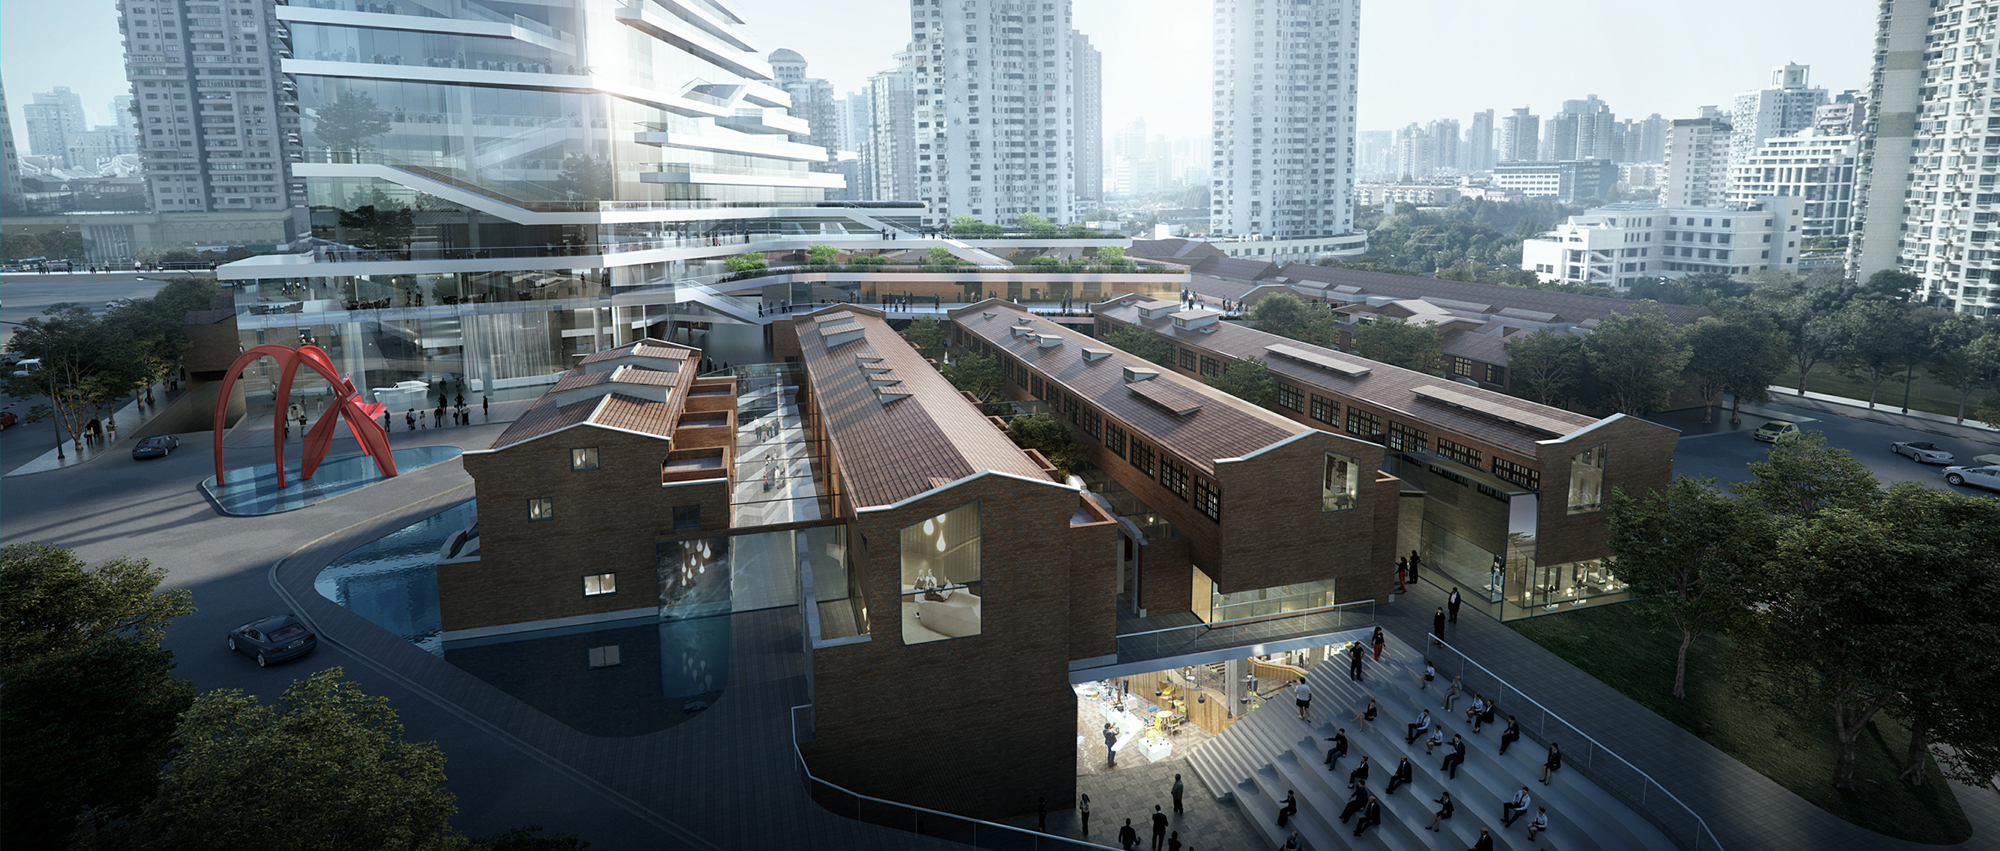 垂直公园：华建集团053-b-1街坊方案设计竞赛优胜方案